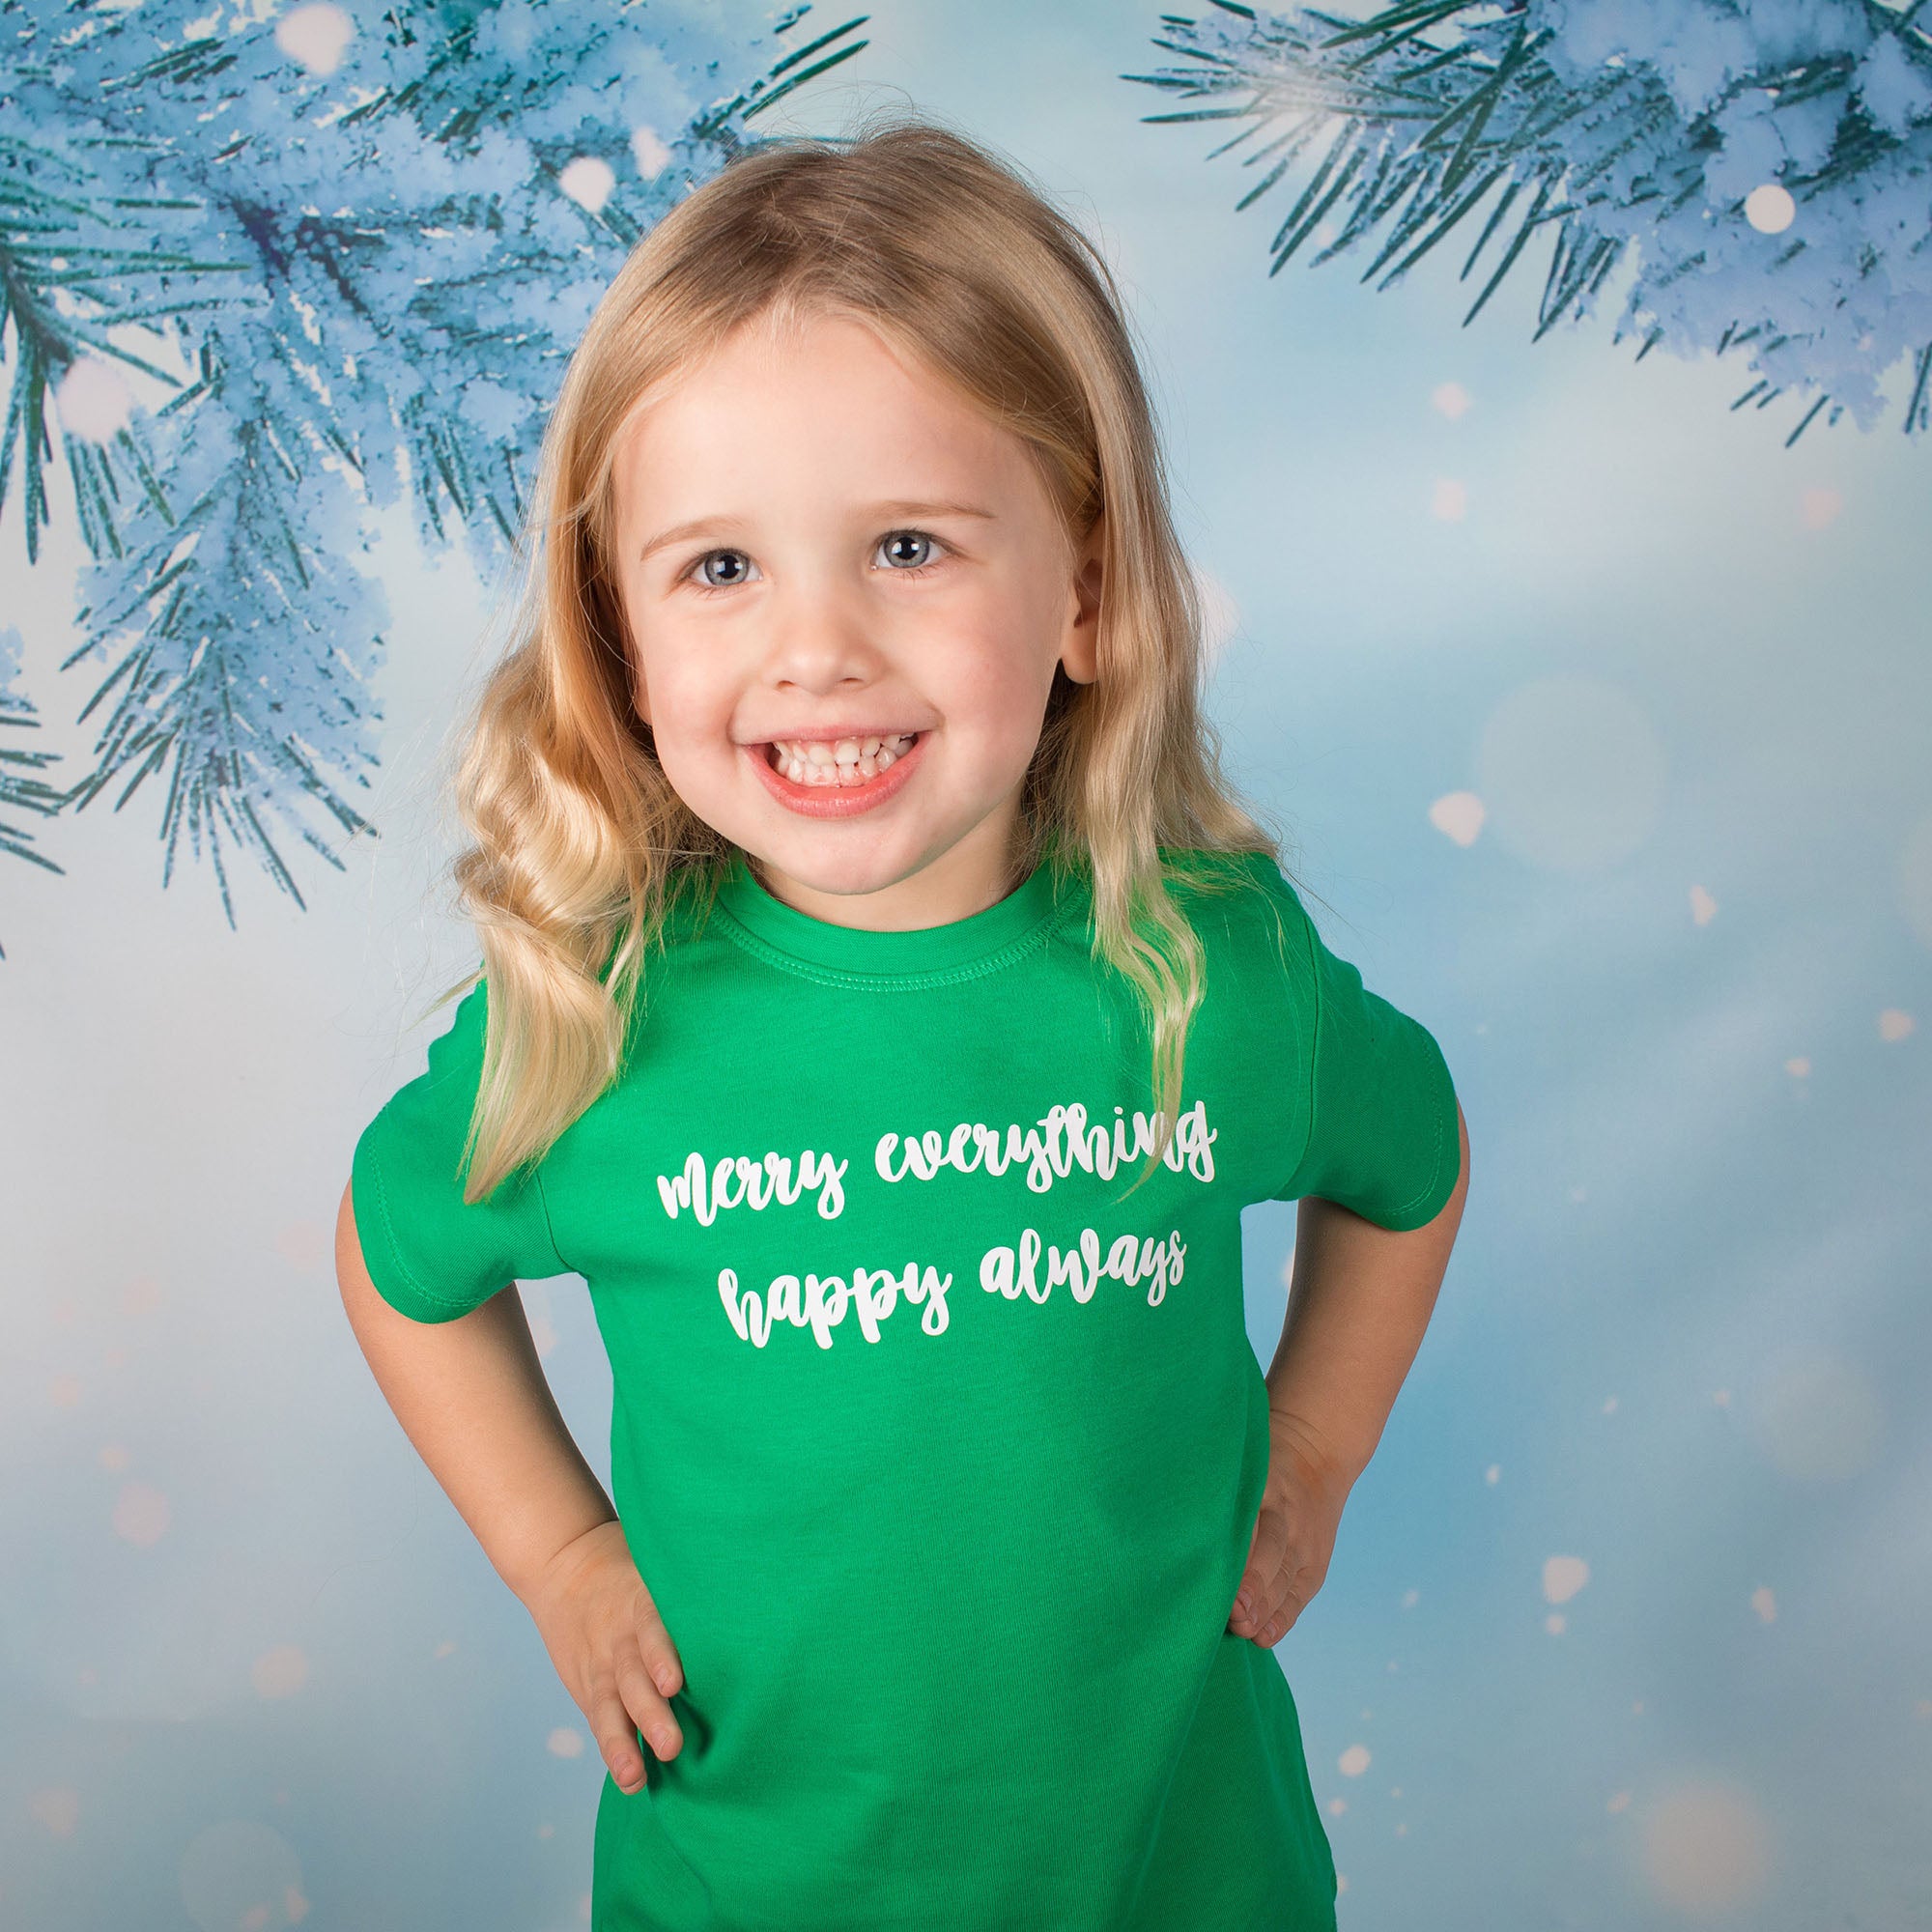 'Merry everything, Happy always' baby shirt met korte mouwen